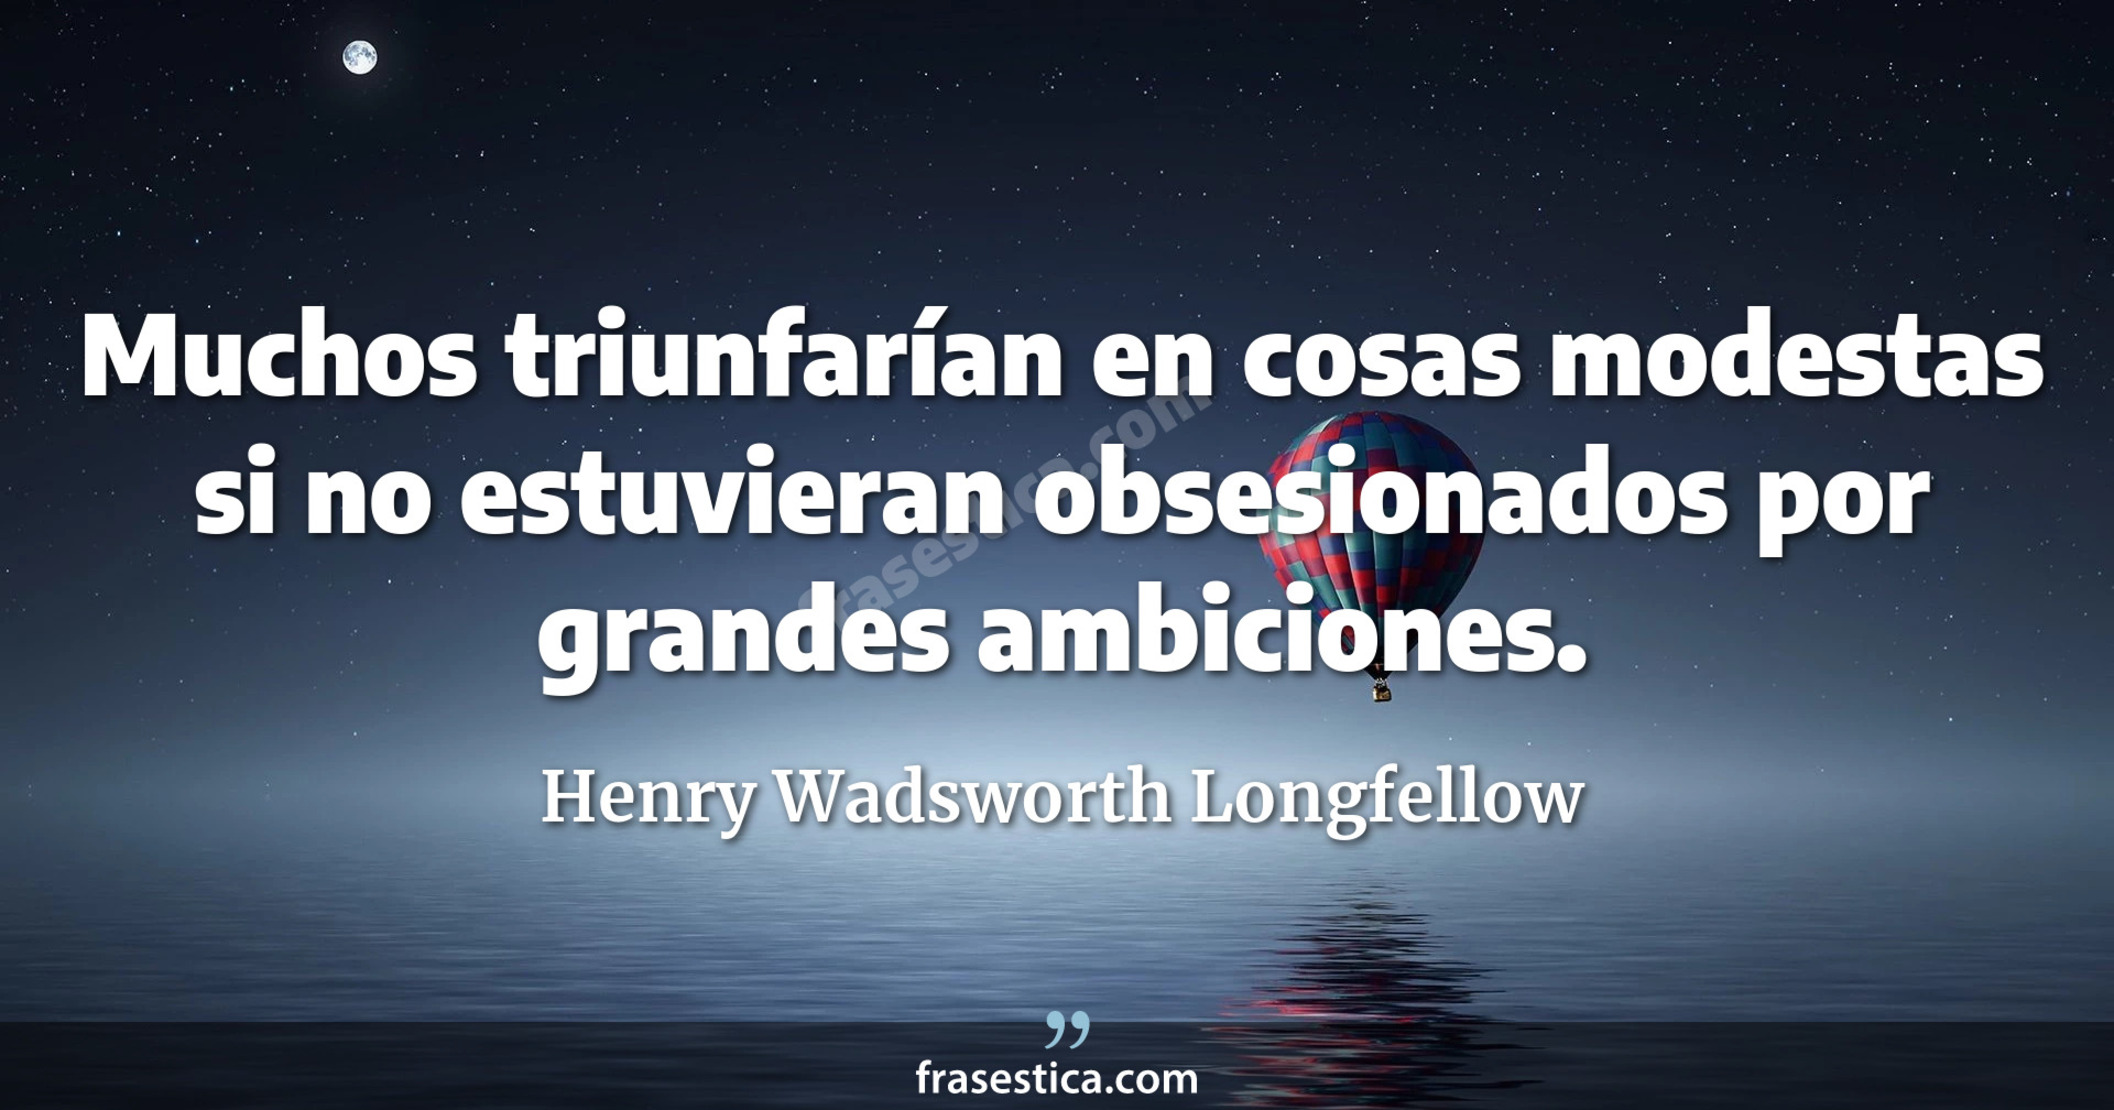 Muchos triunfarían en cosas modestas si no estuvieran obsesionados por grandes ambiciones. - Henry Wadsworth Longfellow